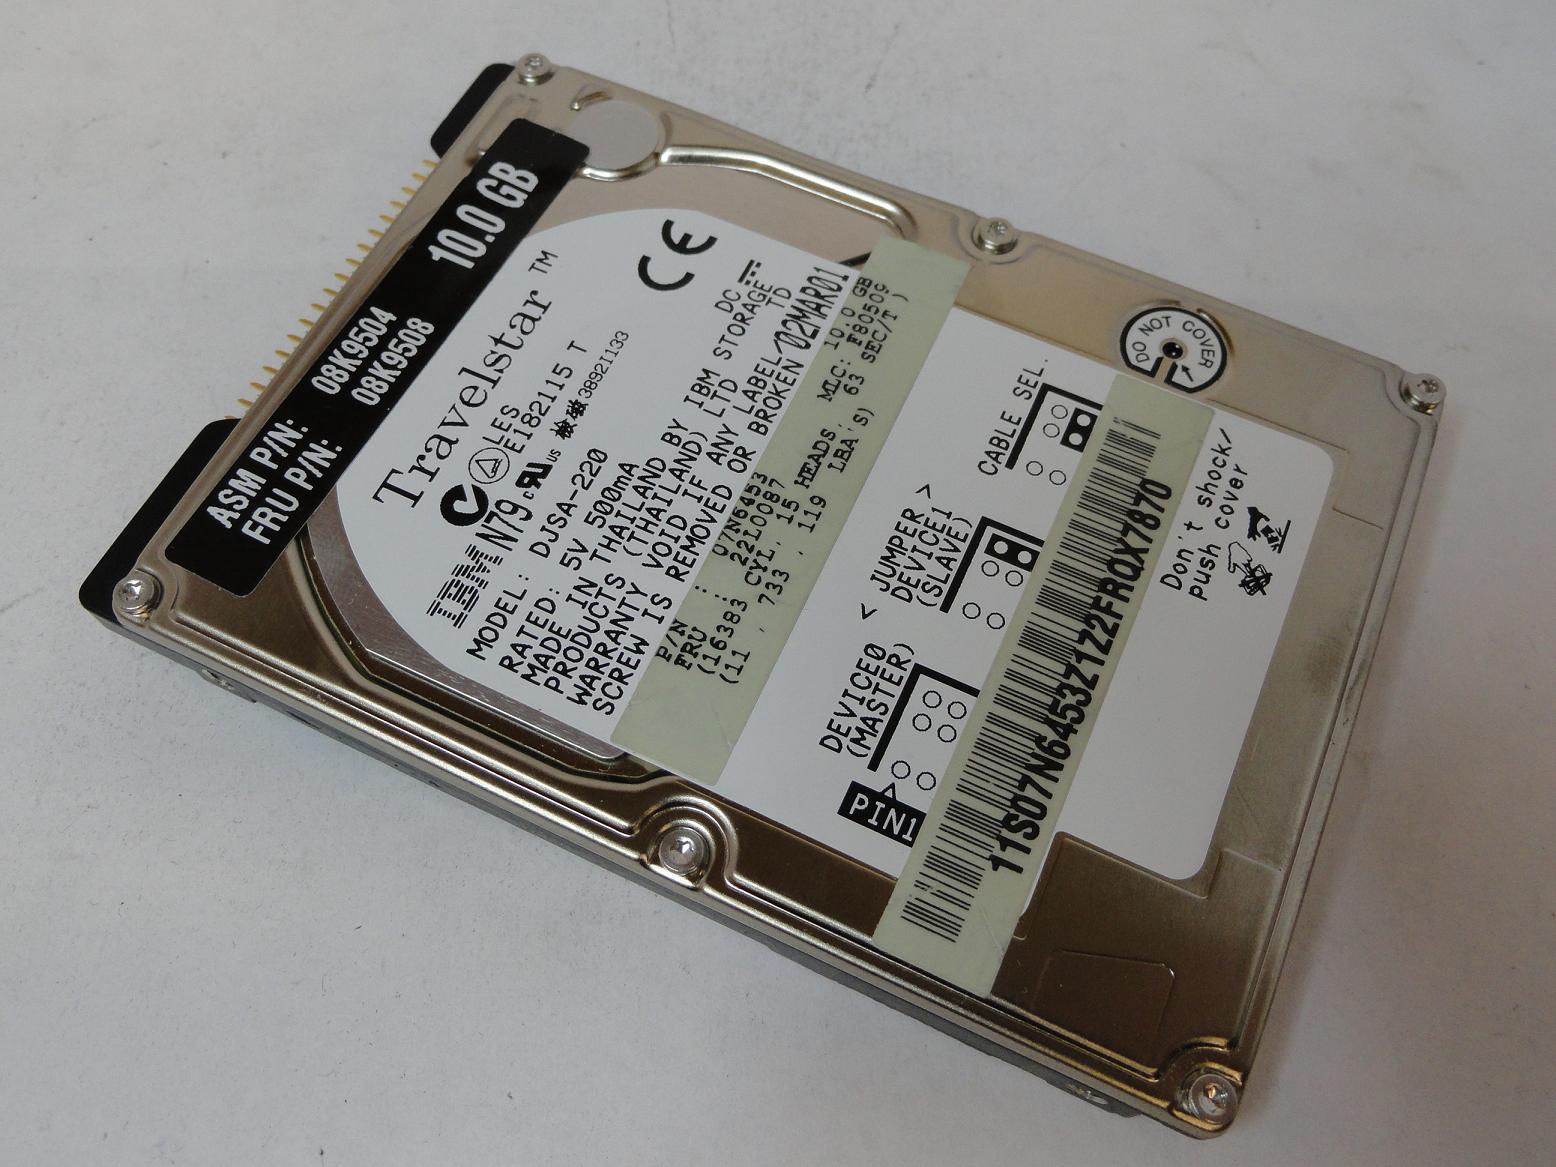 07N6453 - Hitachi IBM 10GB IDE 4200rpm 2.5in HDD - Refurbished